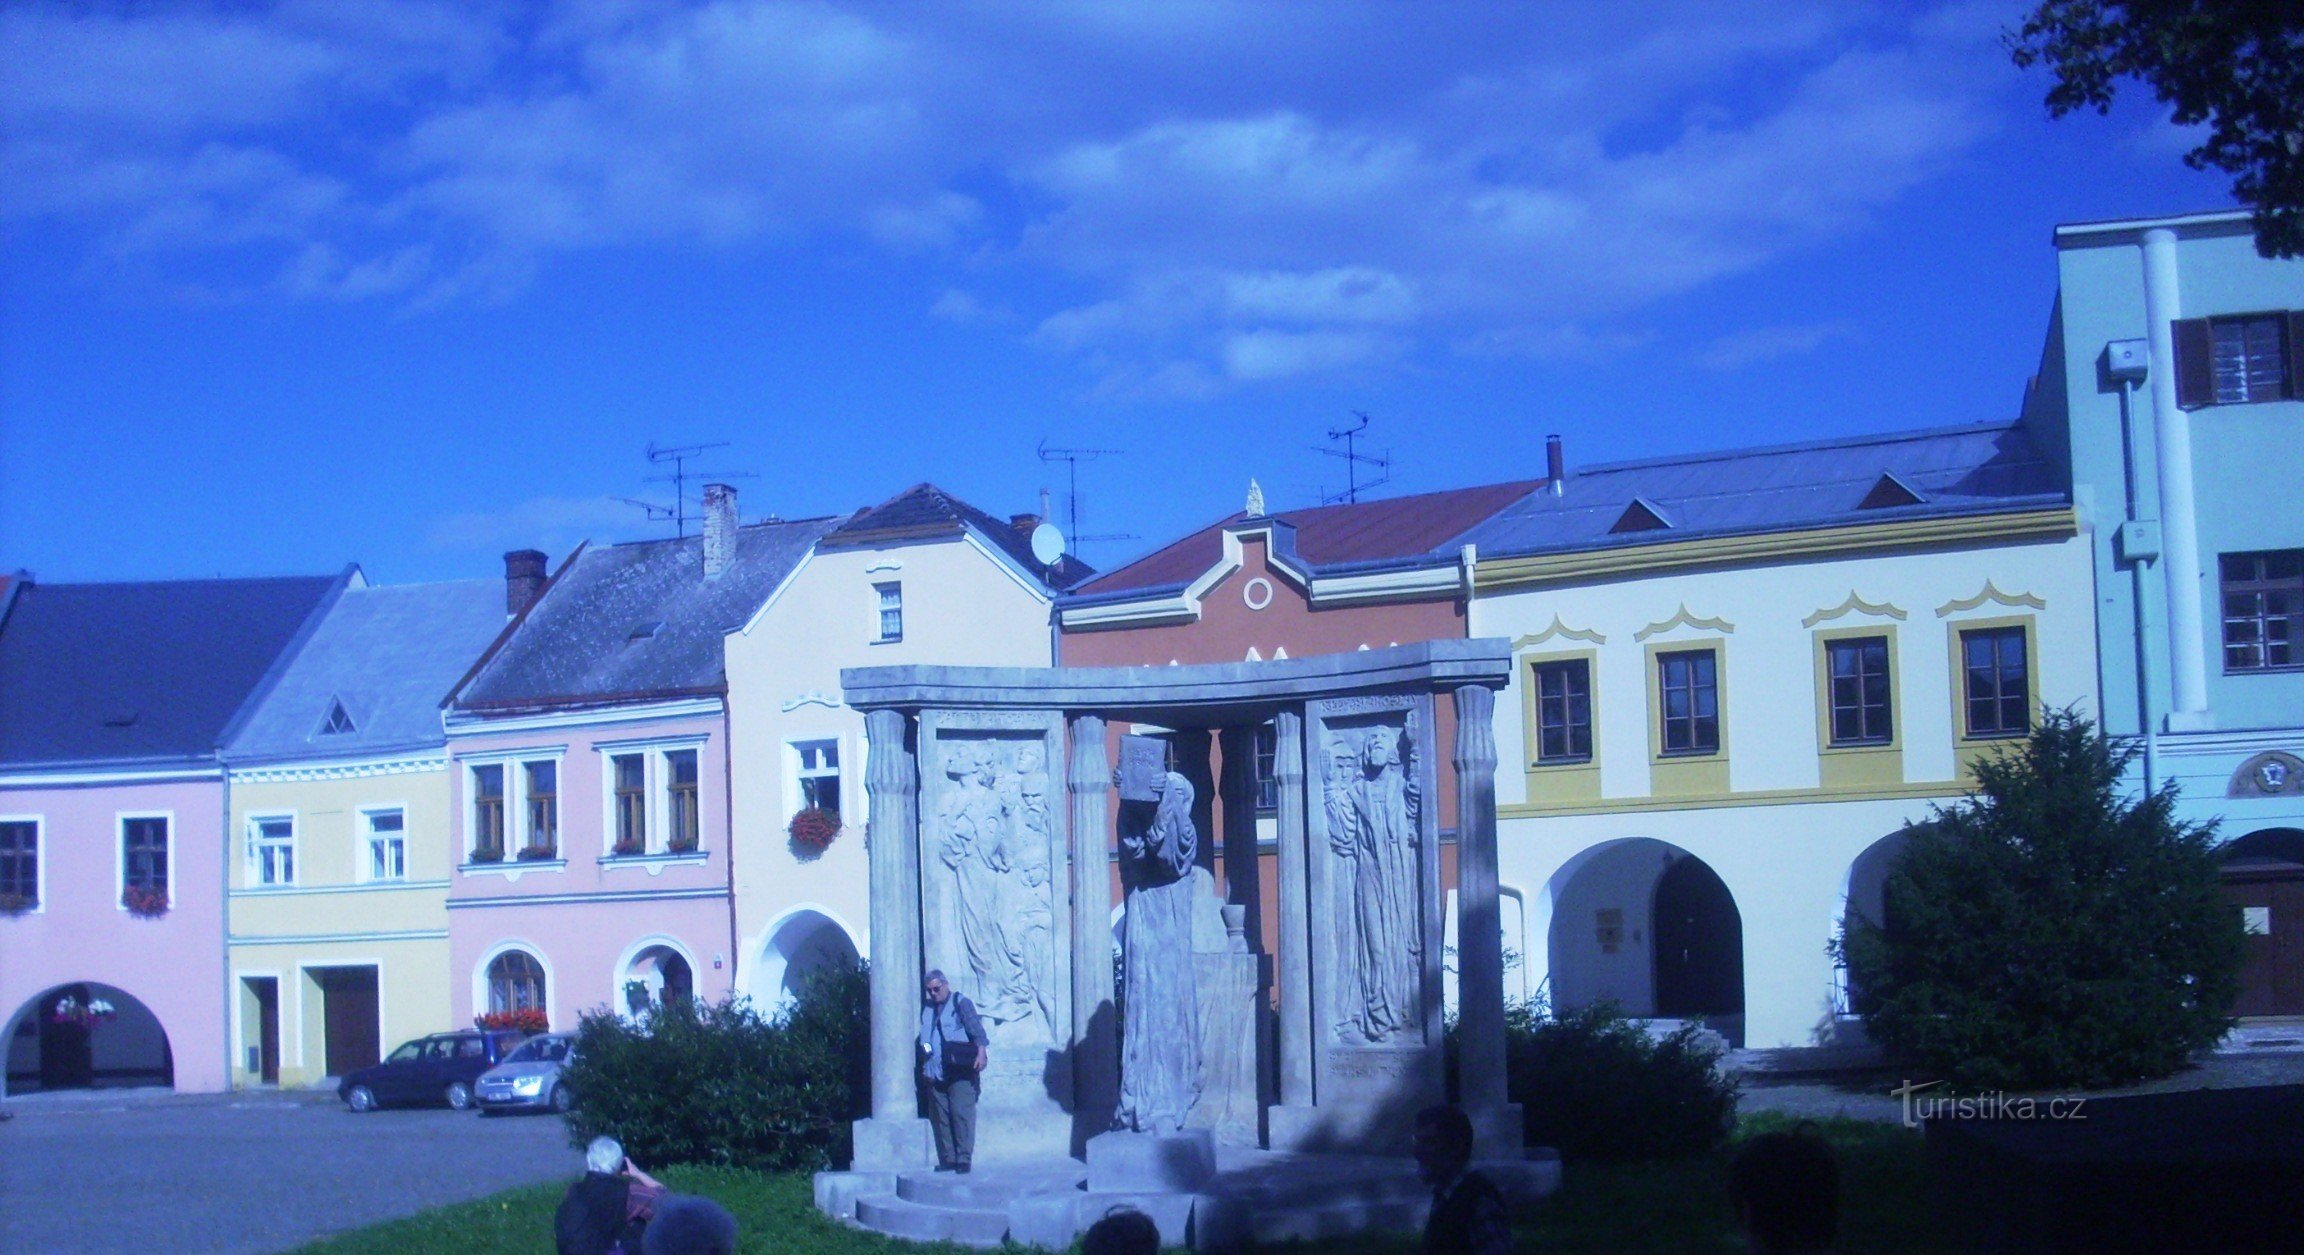 Το μνημείο του Přer στον Jan Blahoslav από τον František Bílek